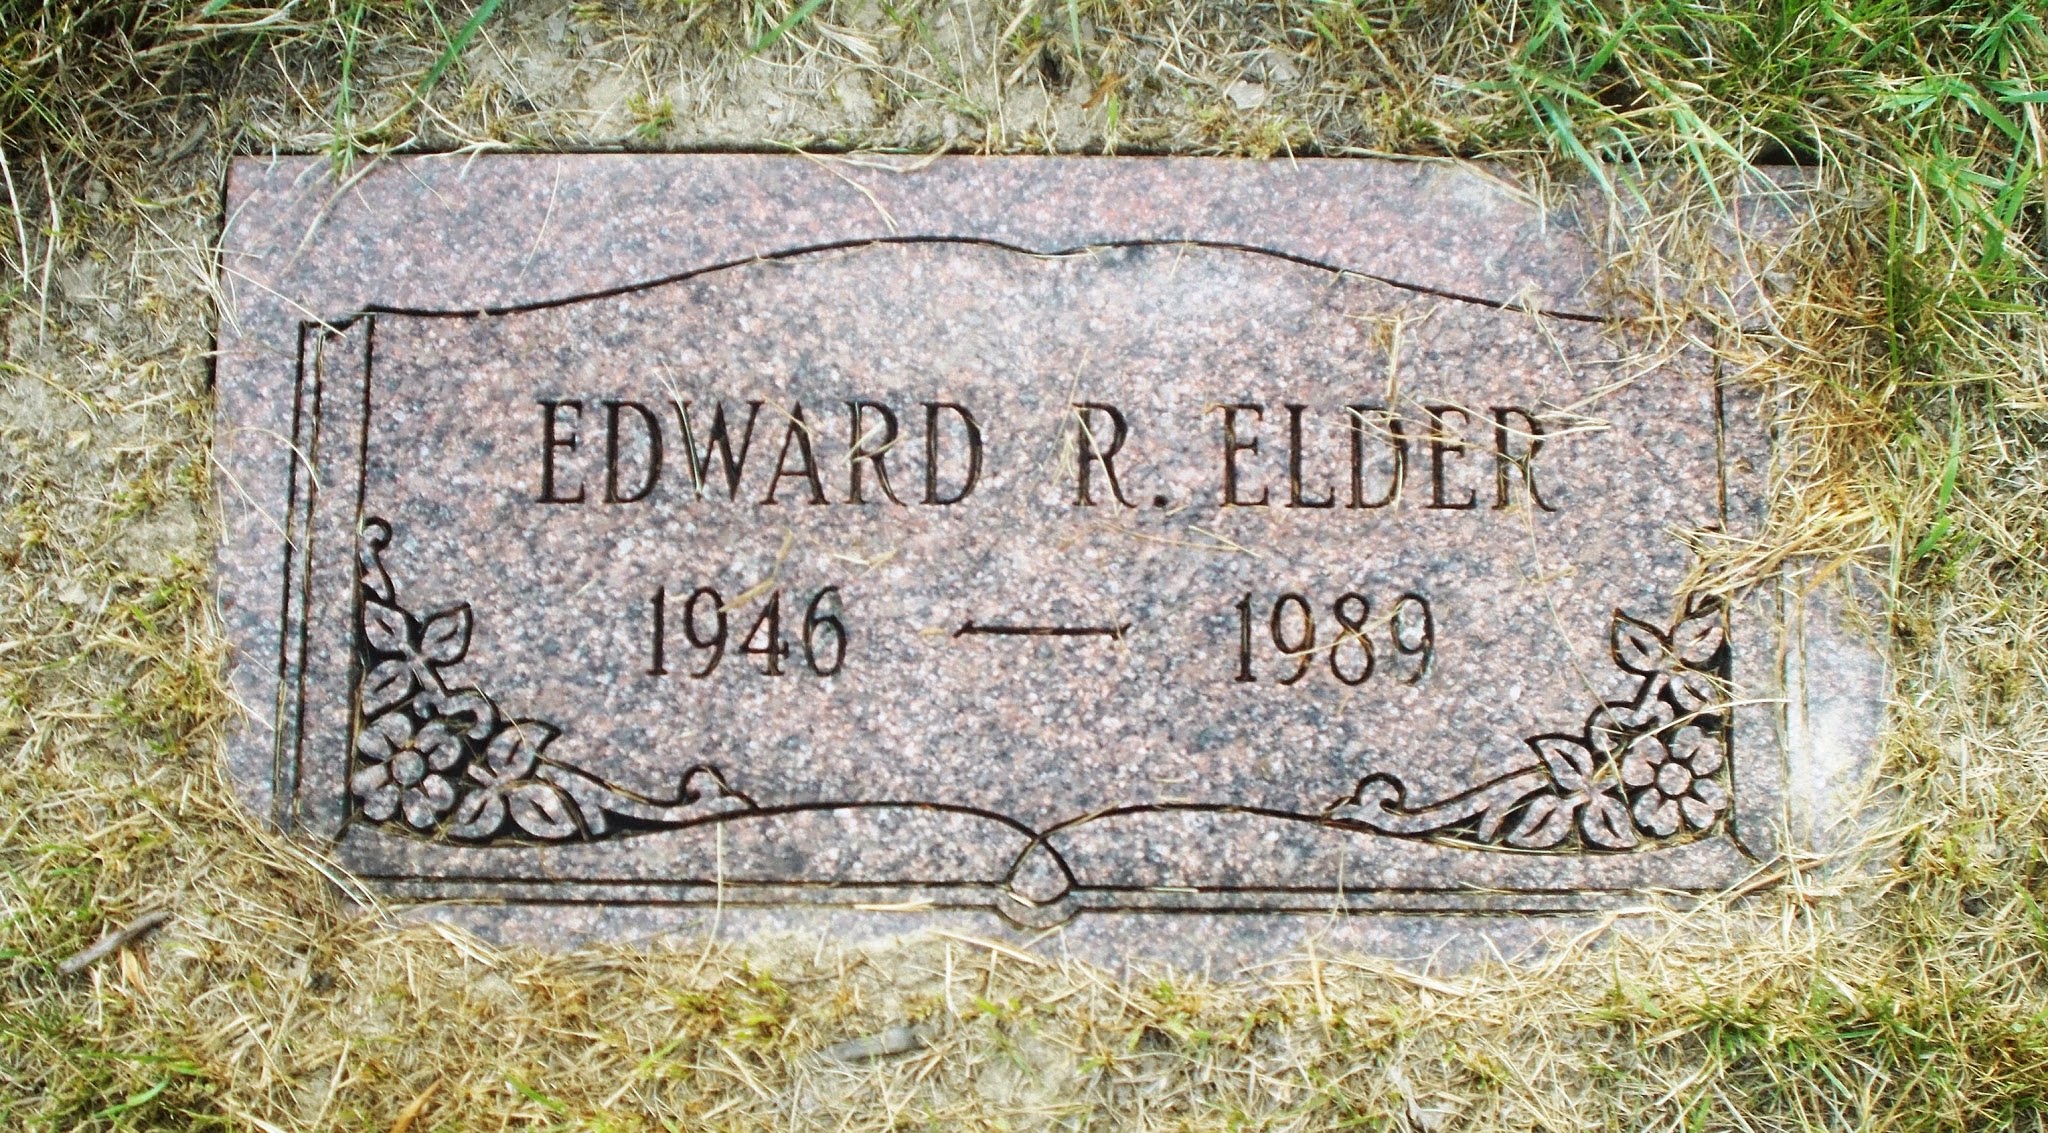 Edward R Elder